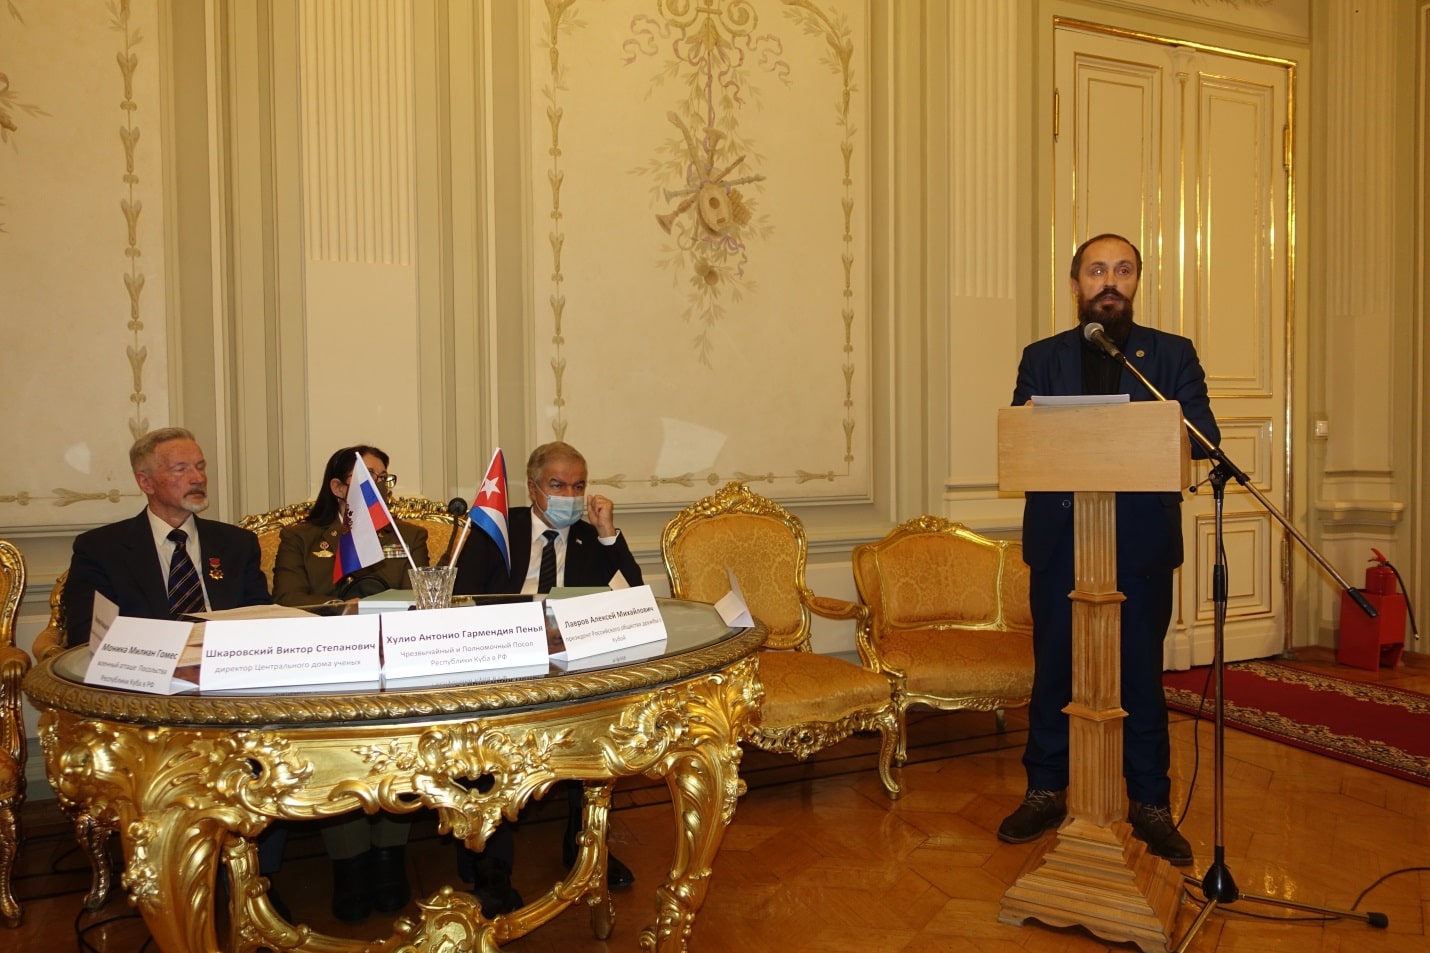 Выступление Леонида Владимировича Савина на Круглом столе в ЦДУ.